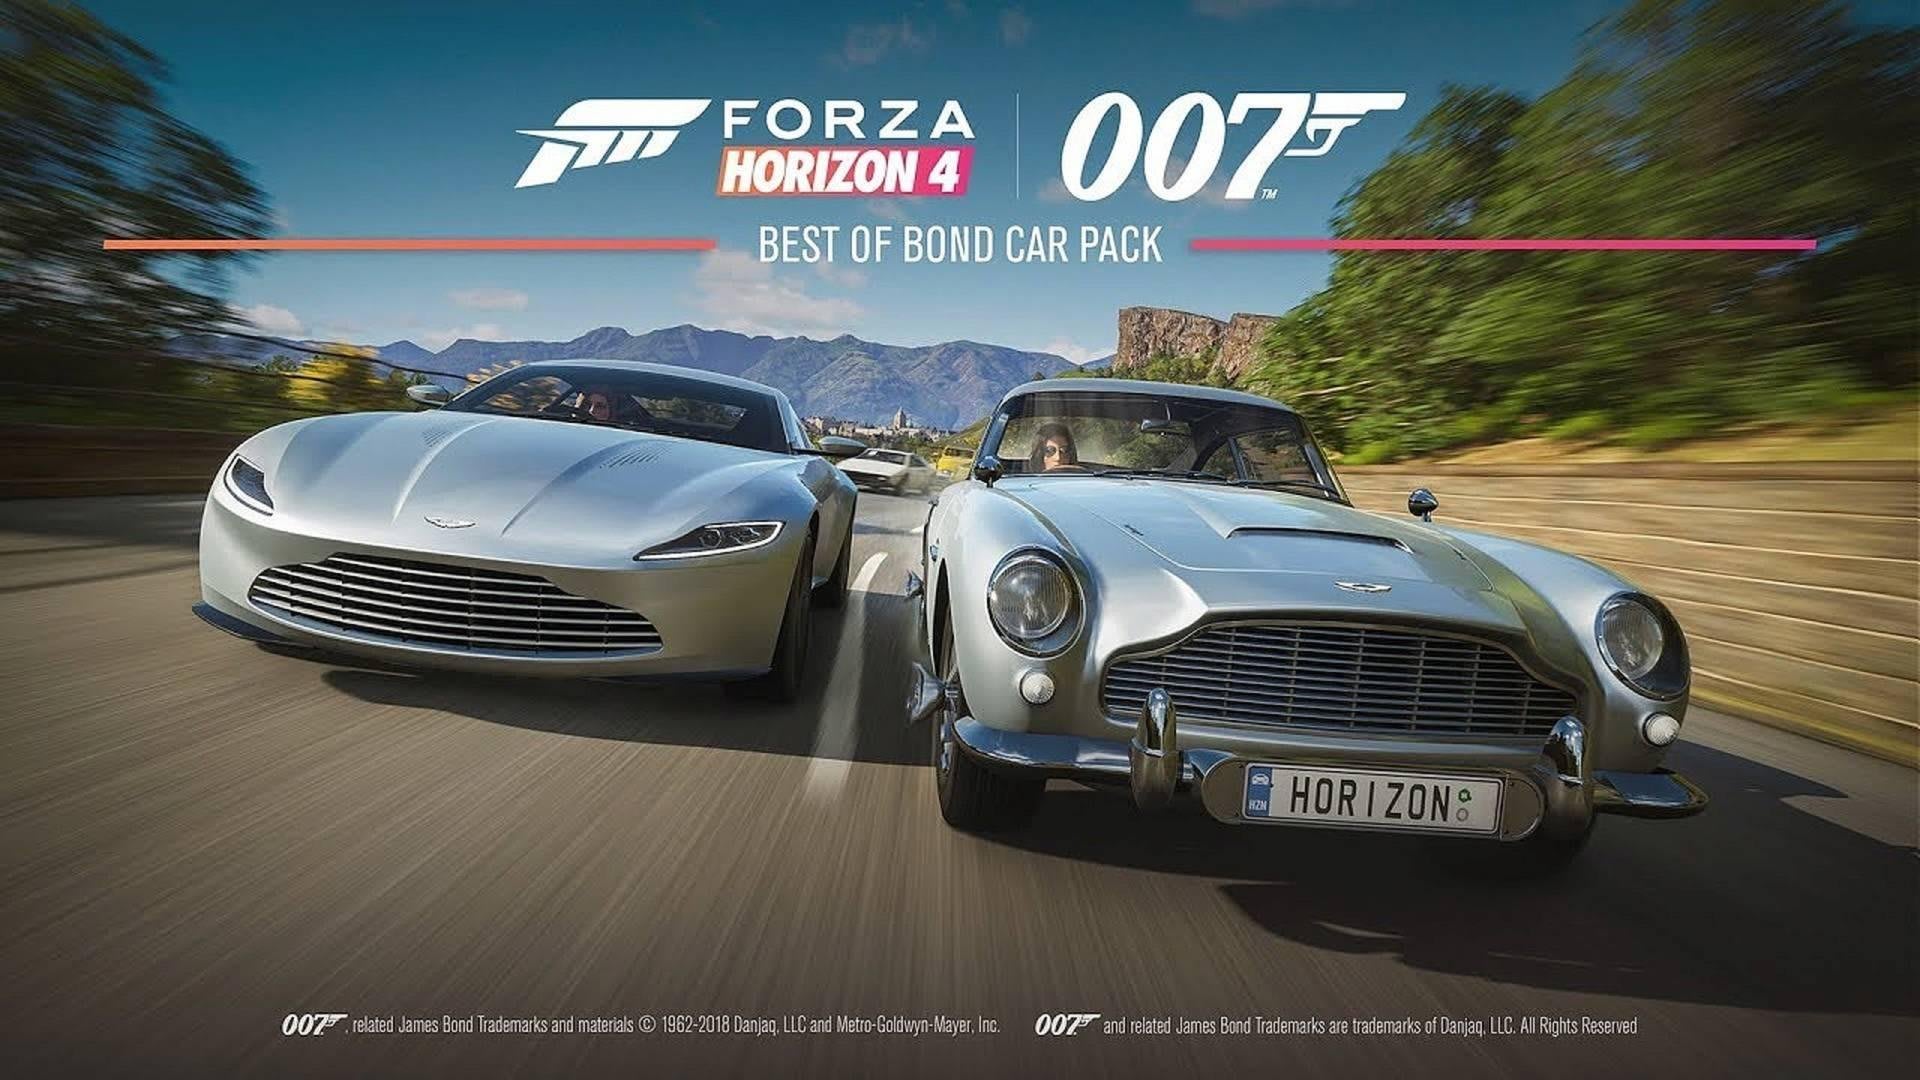 Análise: Forza Horizon 4 (XBO/PC) é um jogo de corrida excelente para  qualquer estação - GameBlast